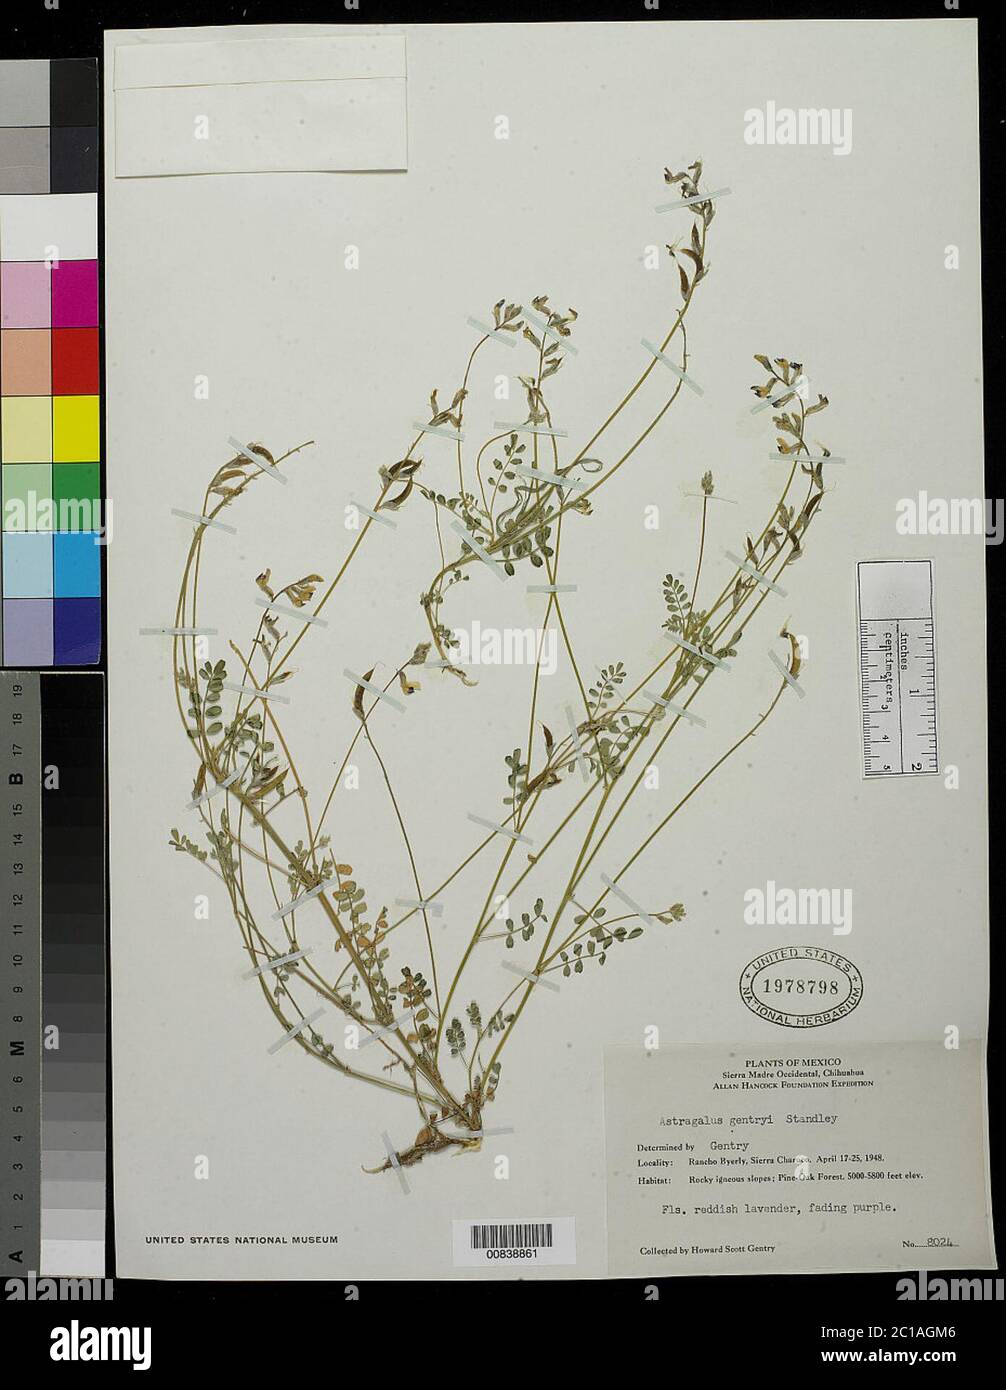 Astragalus gentryi Standl Astragalus gentryi Standl. Stock Photo